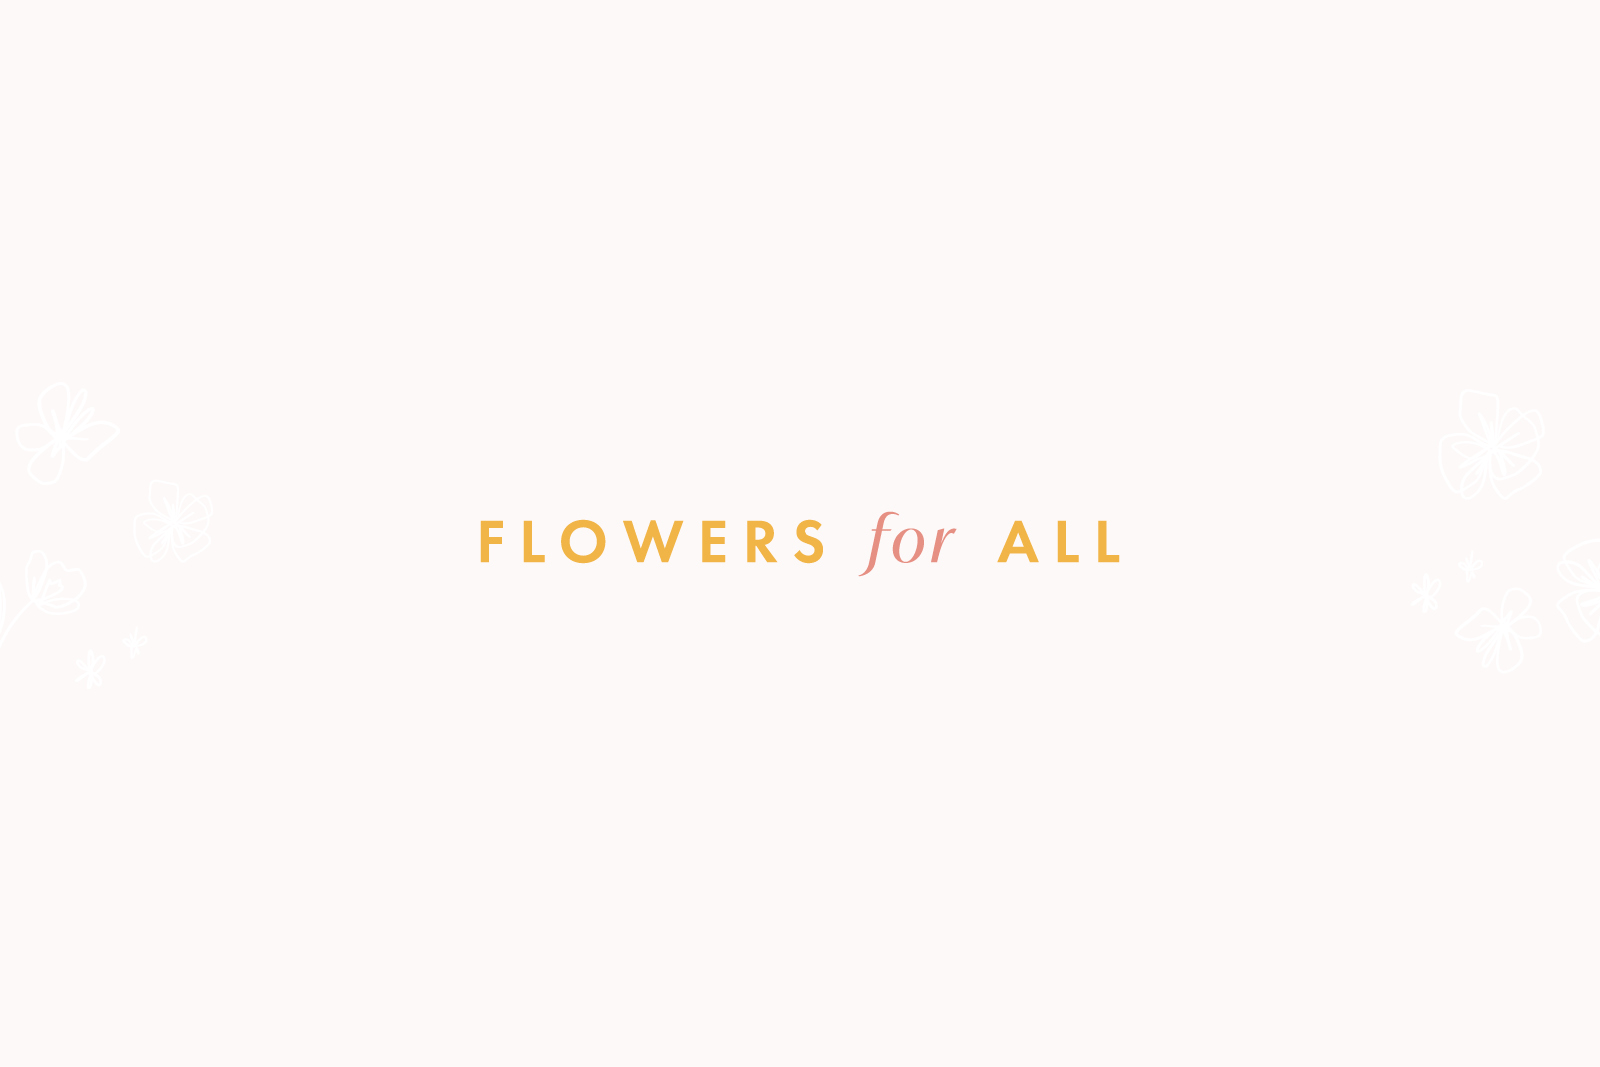 Floral Designer Logo and Brand Design | Floral Designer Website Design on Showit // Sarah Ann Design